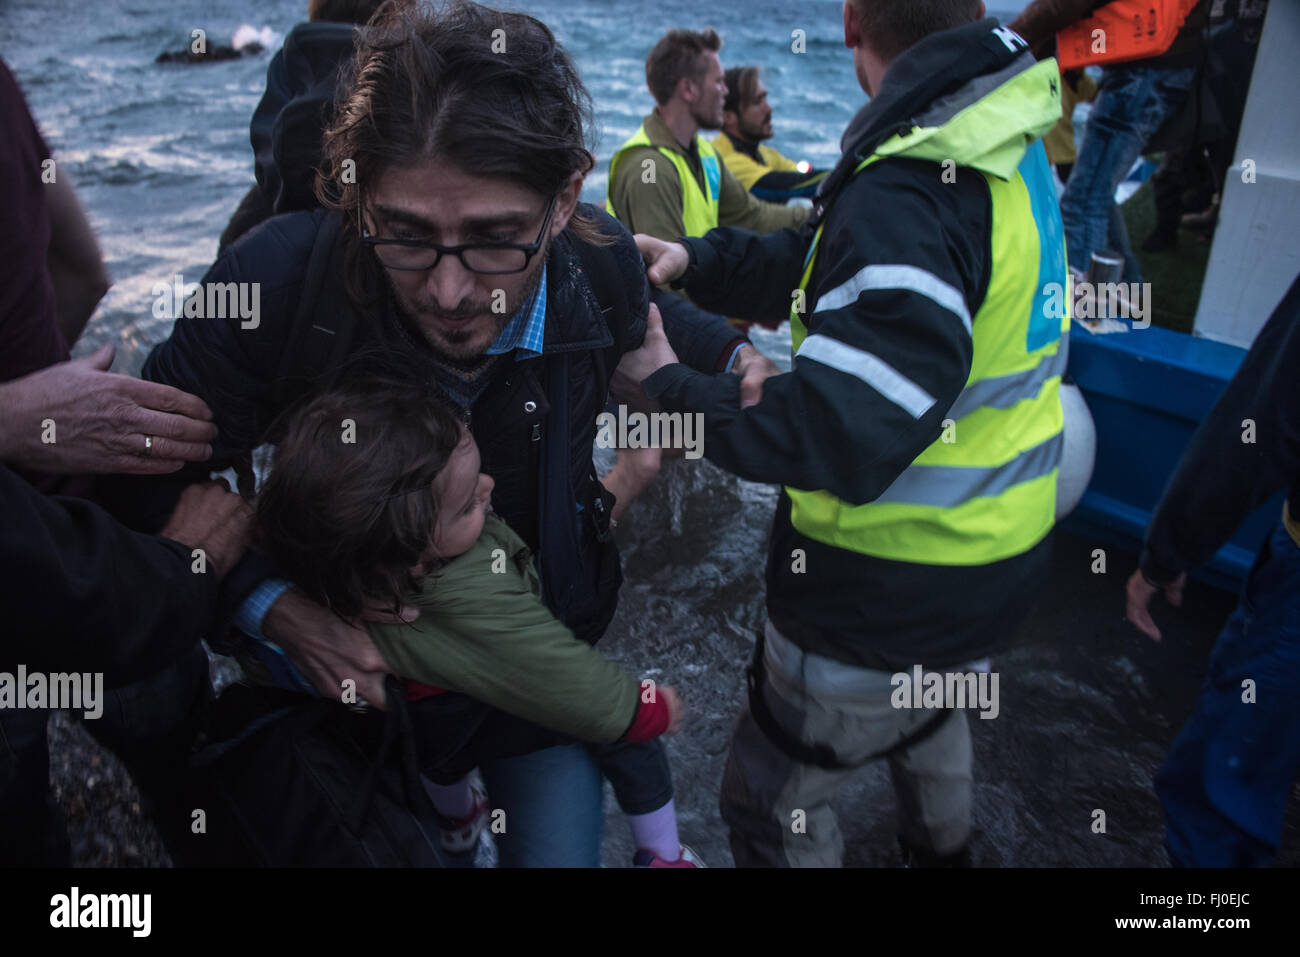 Los refugiados que llegan a las costas de Efthalou, Lesbos en Grecia. Foto de stock